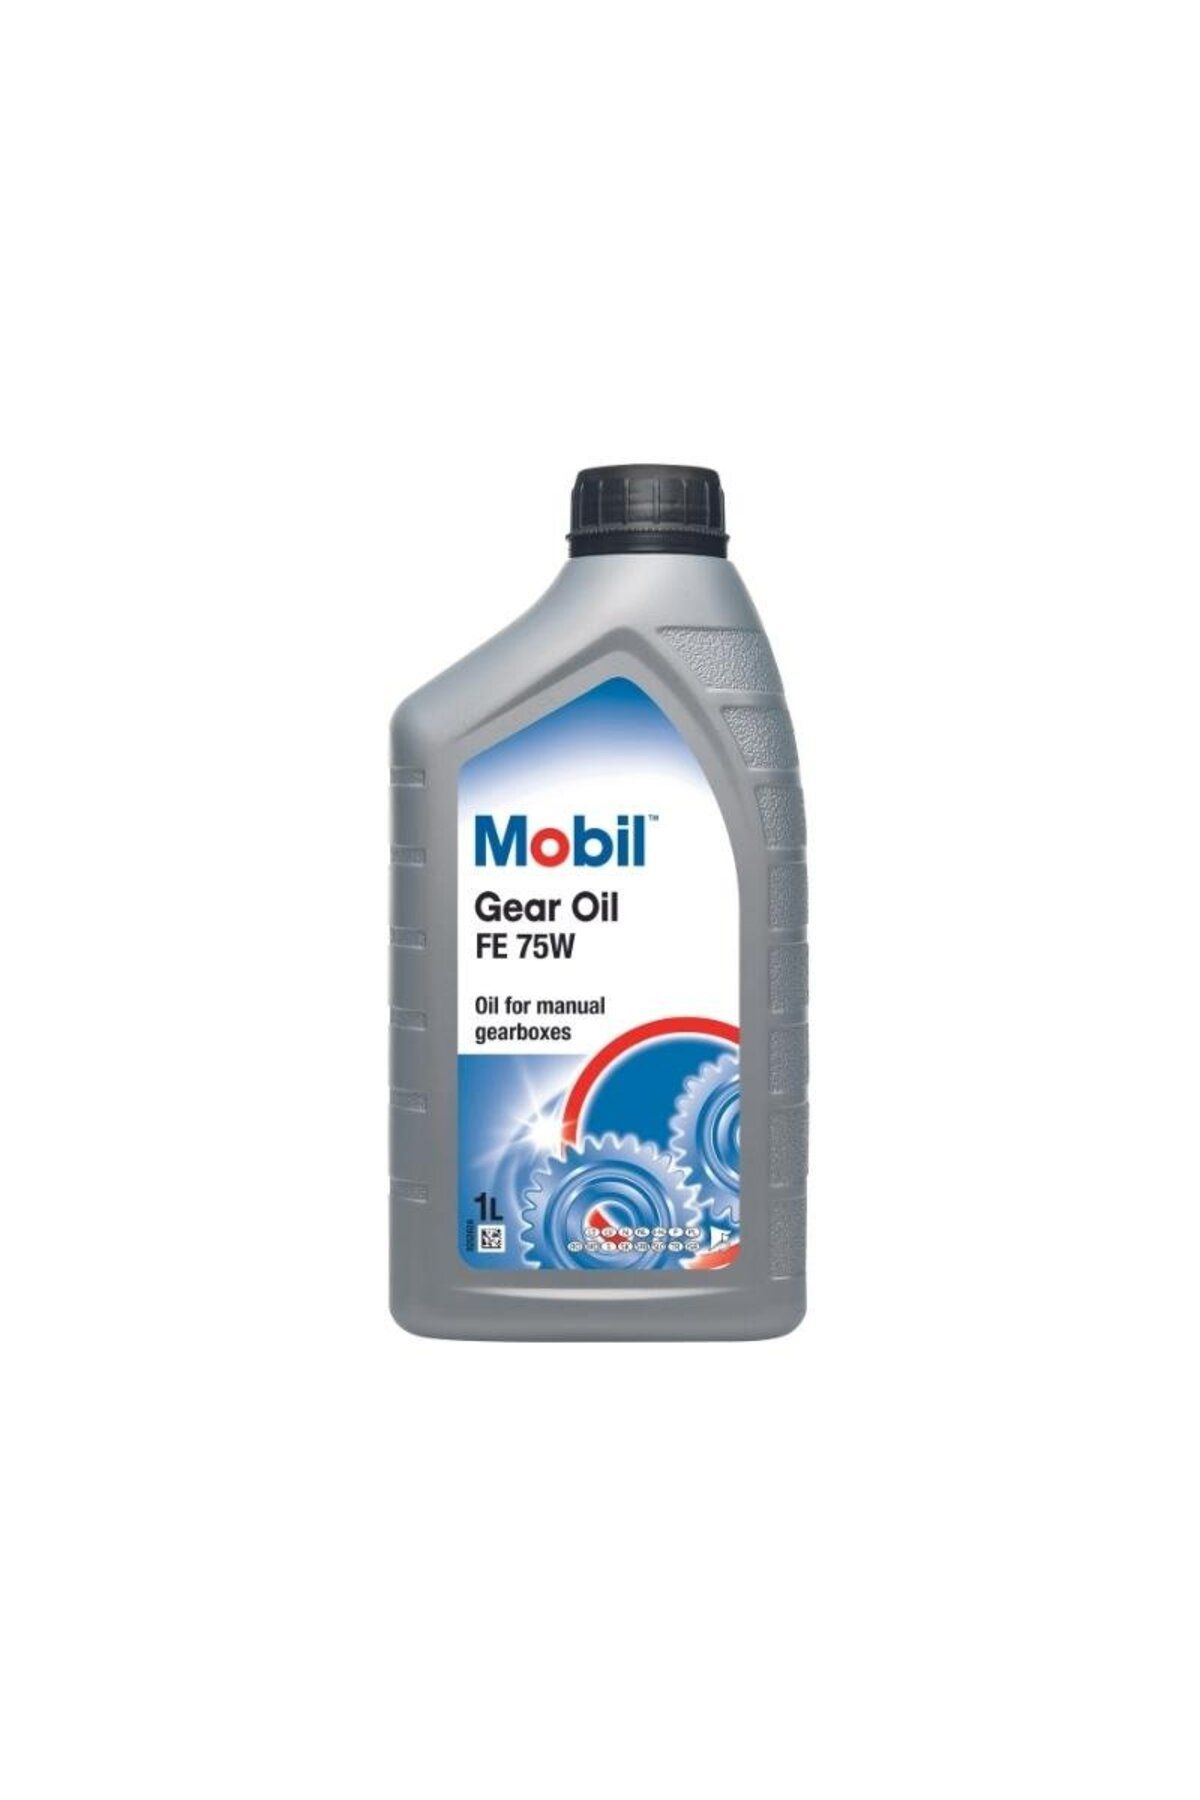 Mobil Gear Oil FE 75W - Şanzıman Yağı - 1 Lt.(2 ad)